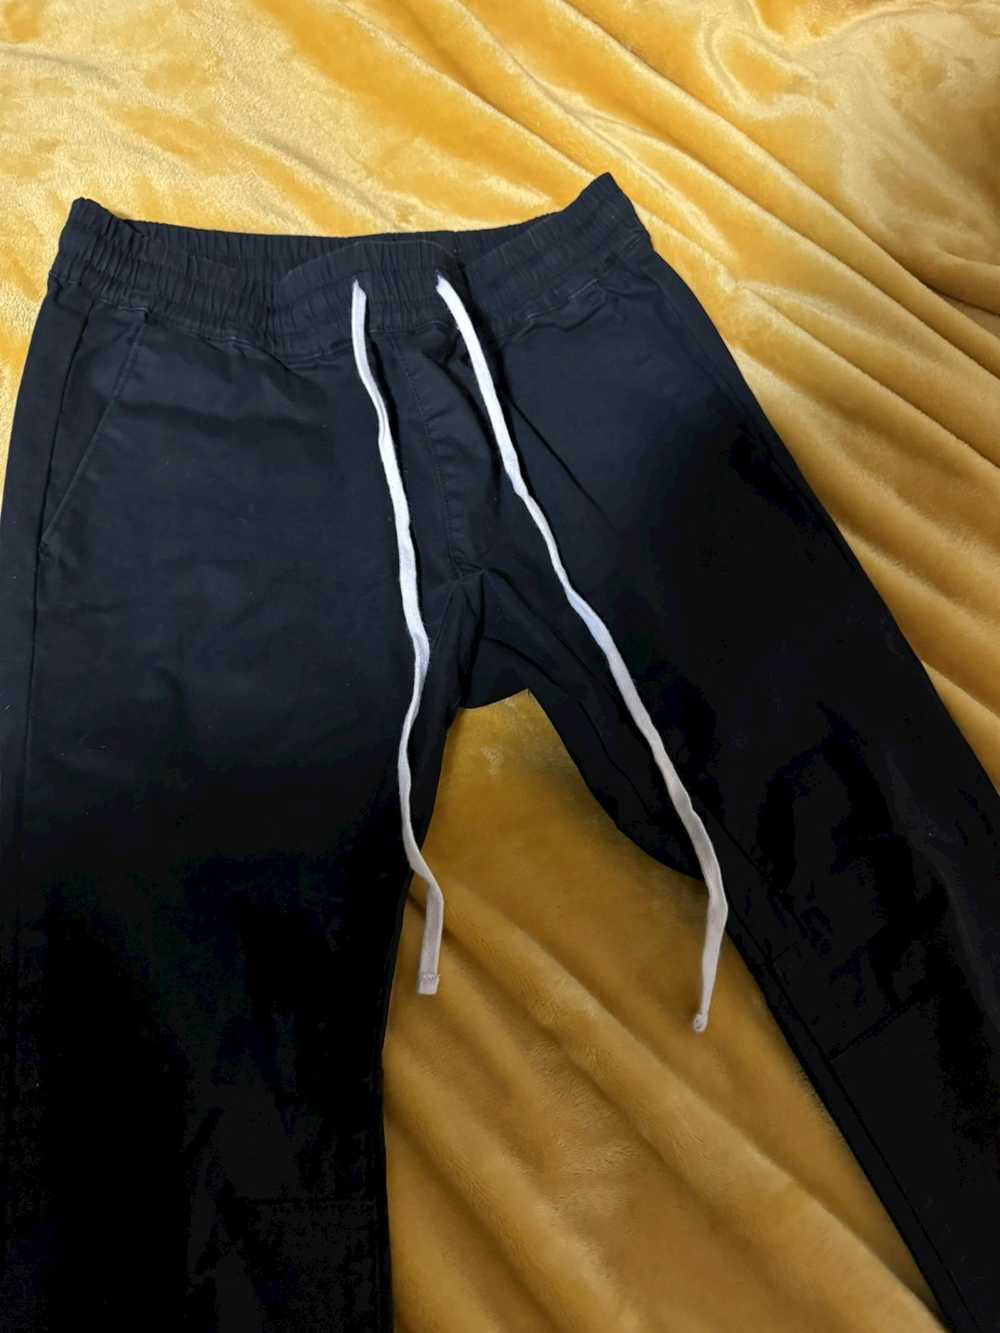 Pacsun PacSun Black ankle zip Jogger Sweatpants - image 8